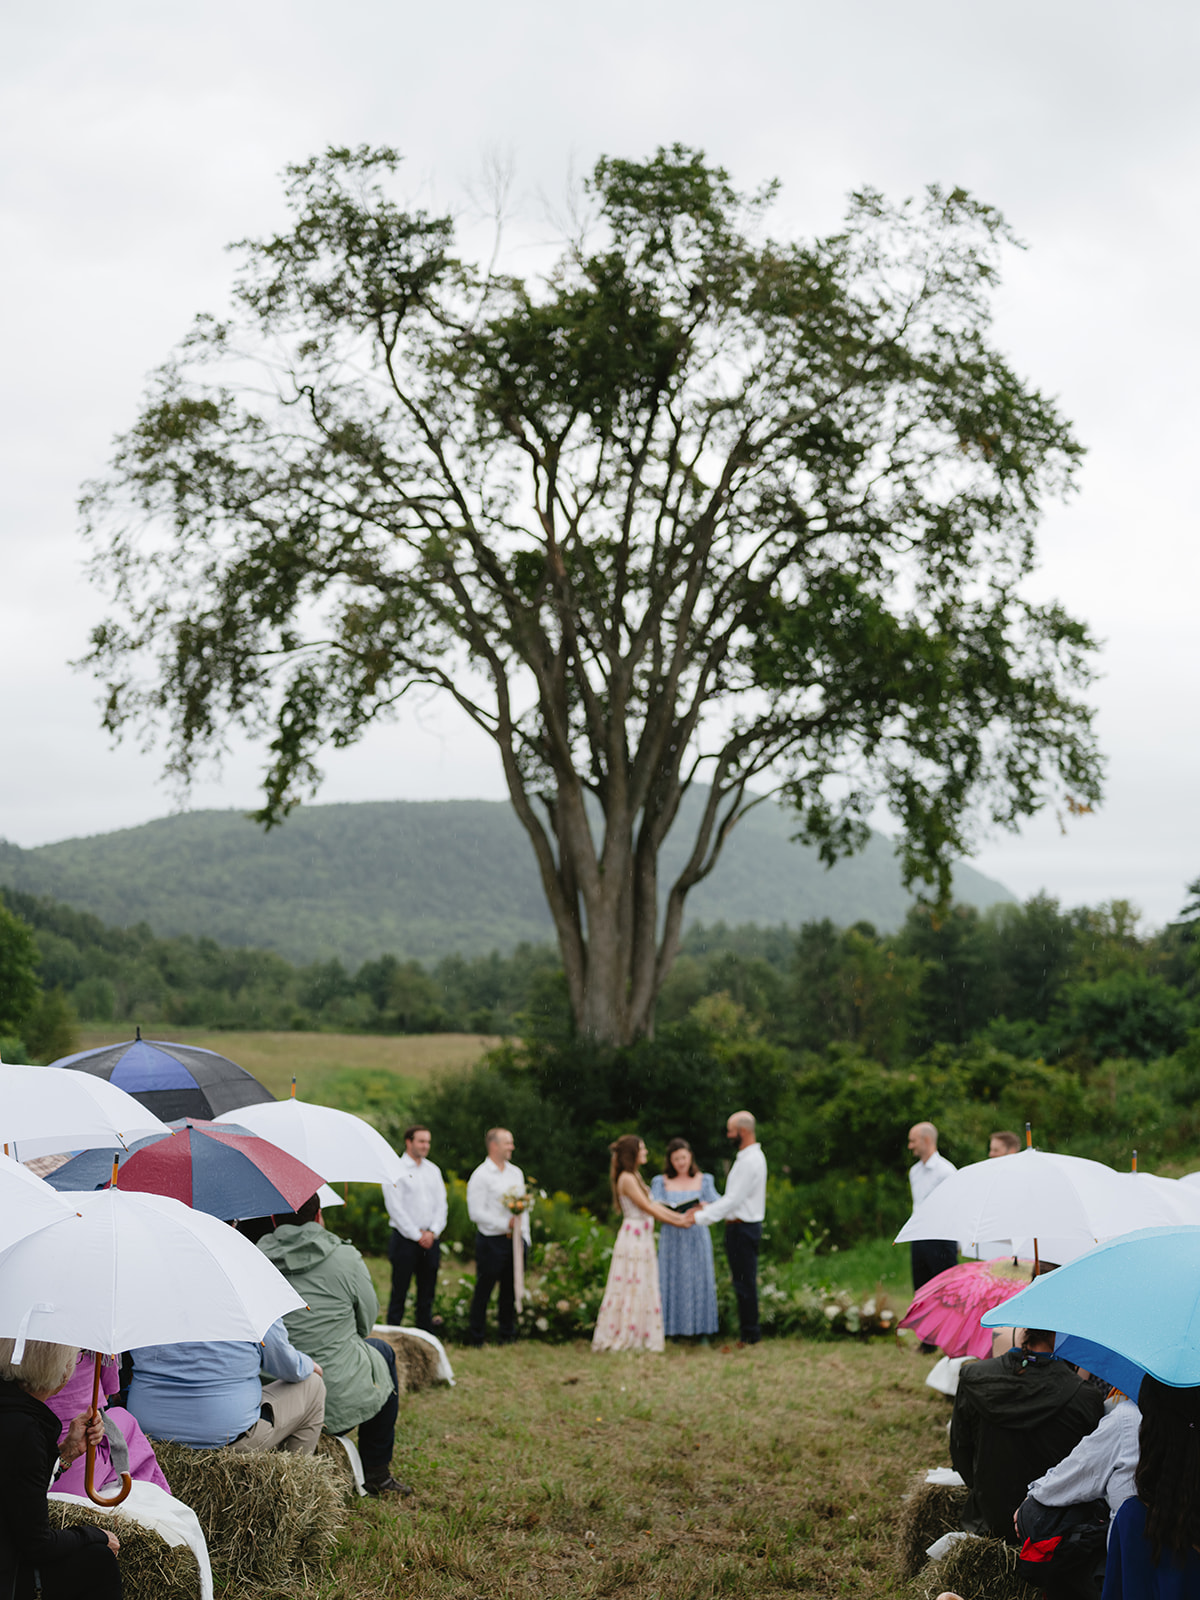 rainy wedding day in vermont